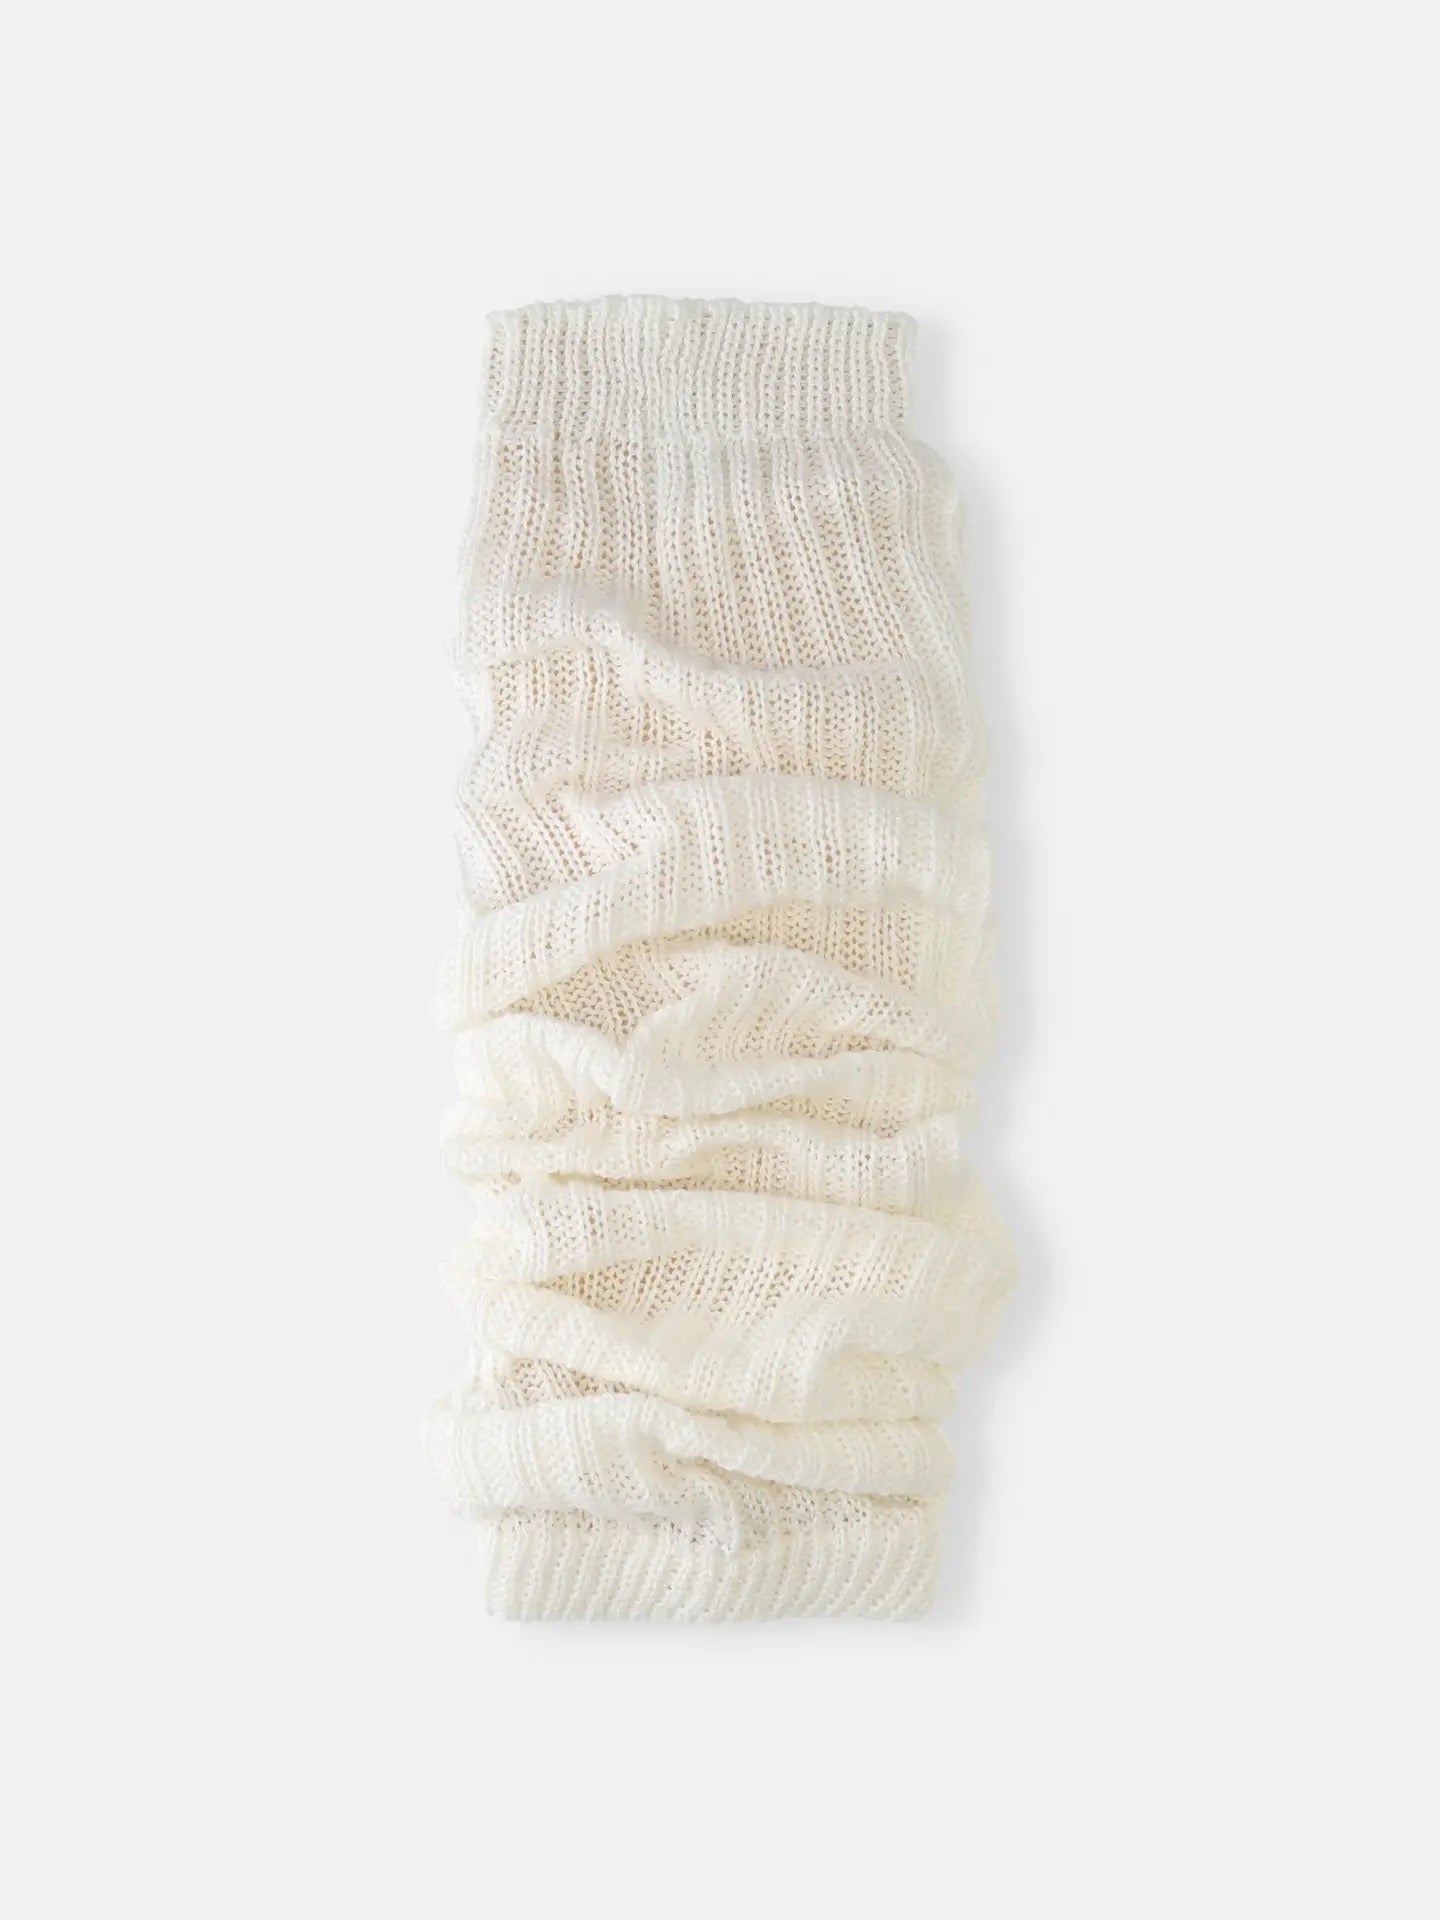 靴下屋Tabio经典素色罗纹保暖舒适堆堆腿套袜套 8色选